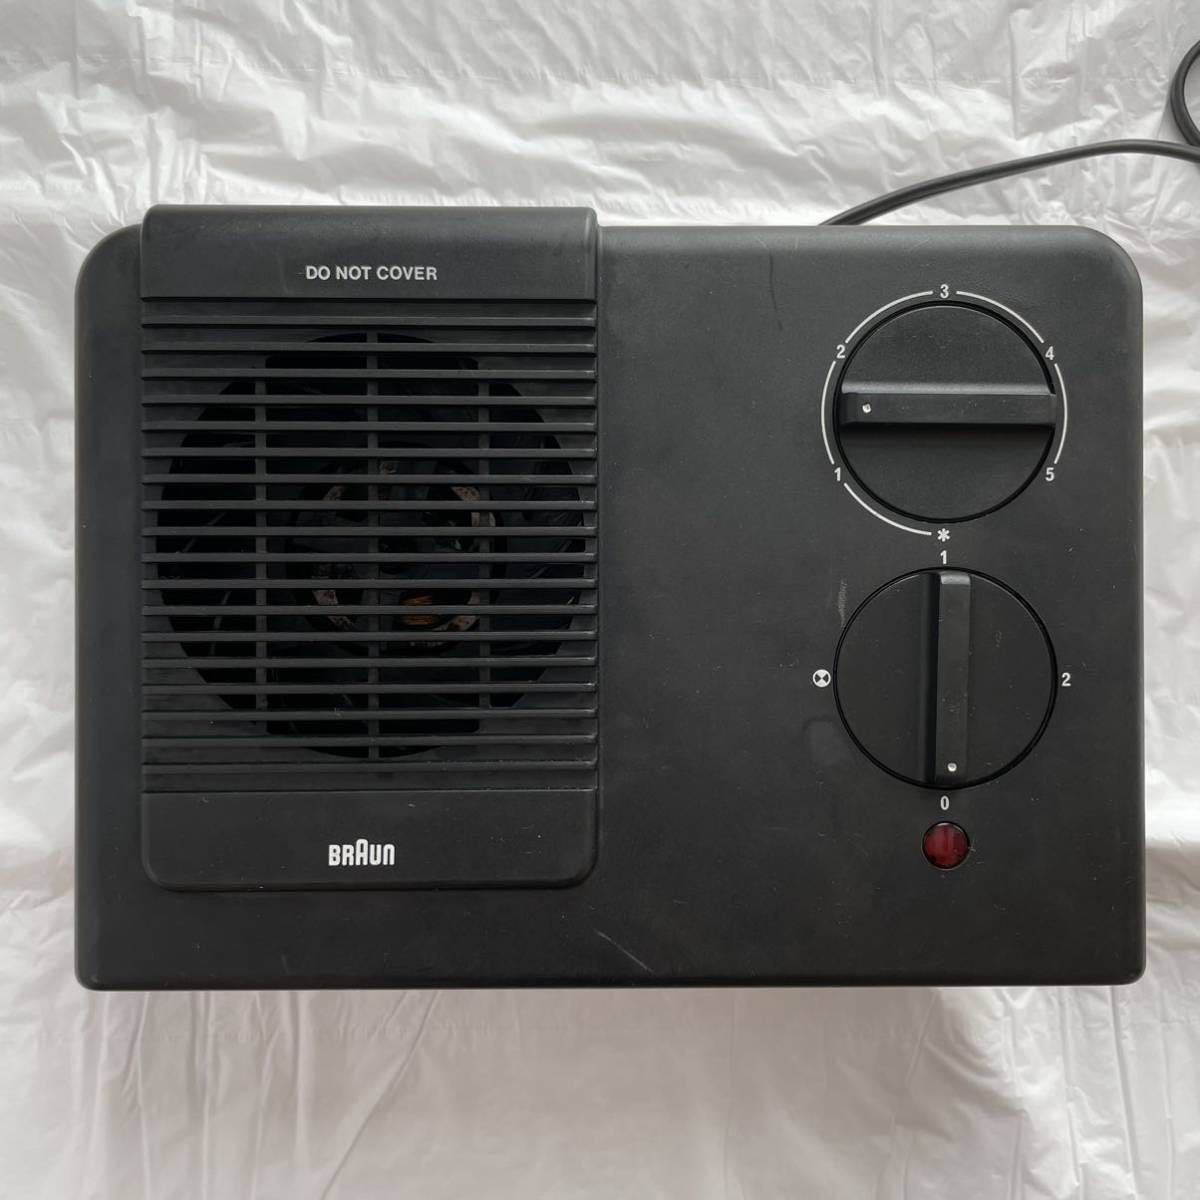 BRAUN Brown Fan Heater fan heater temperature manner machine . manner machine H10 black black 